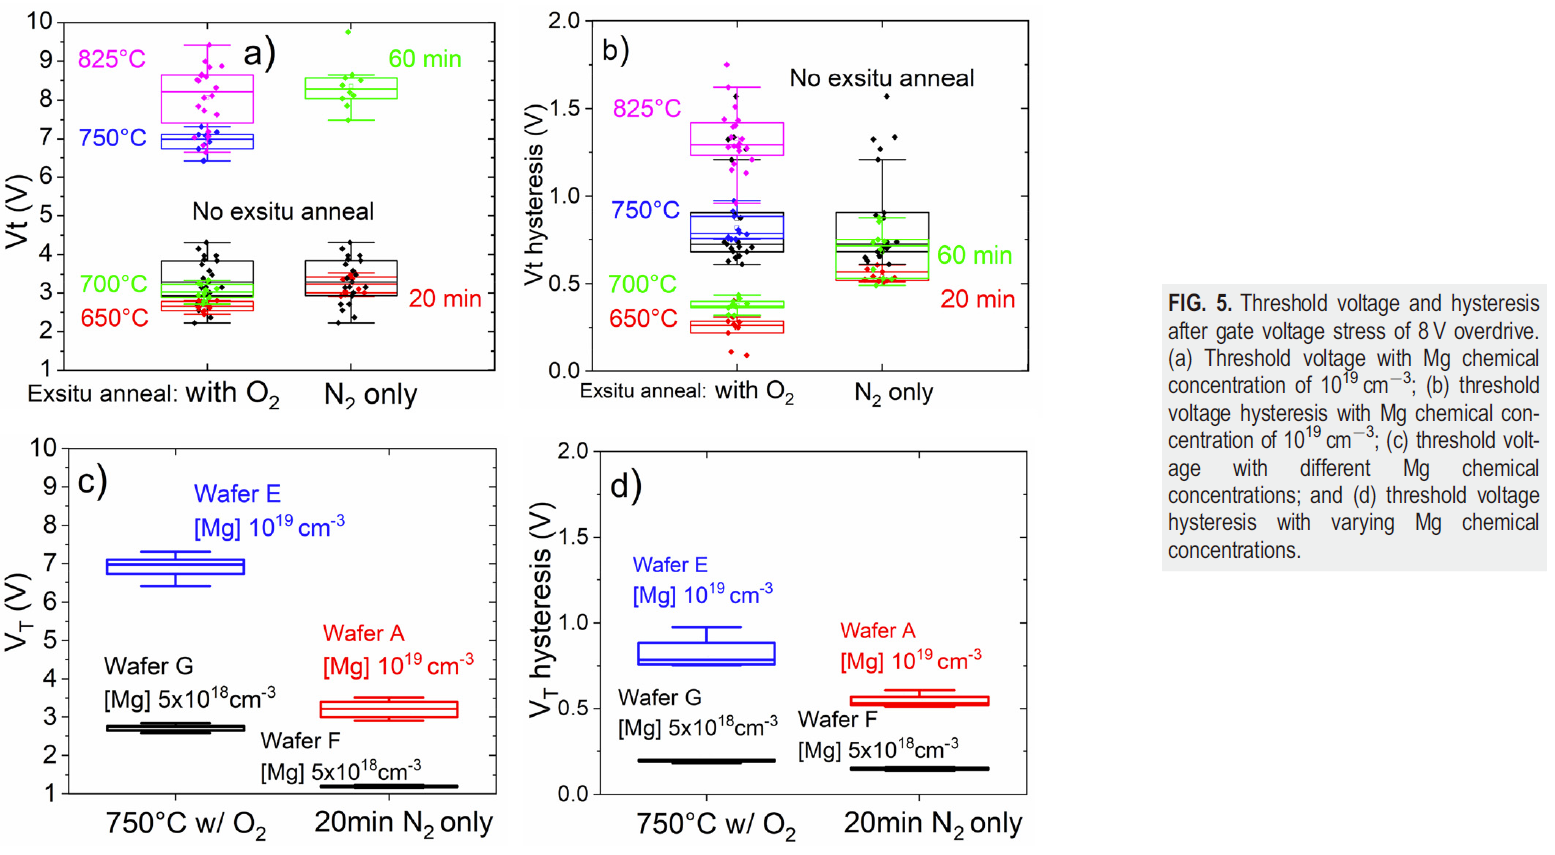 【氮化镓】镁激活退火对p-GaN迁移率和阈值电压的影响